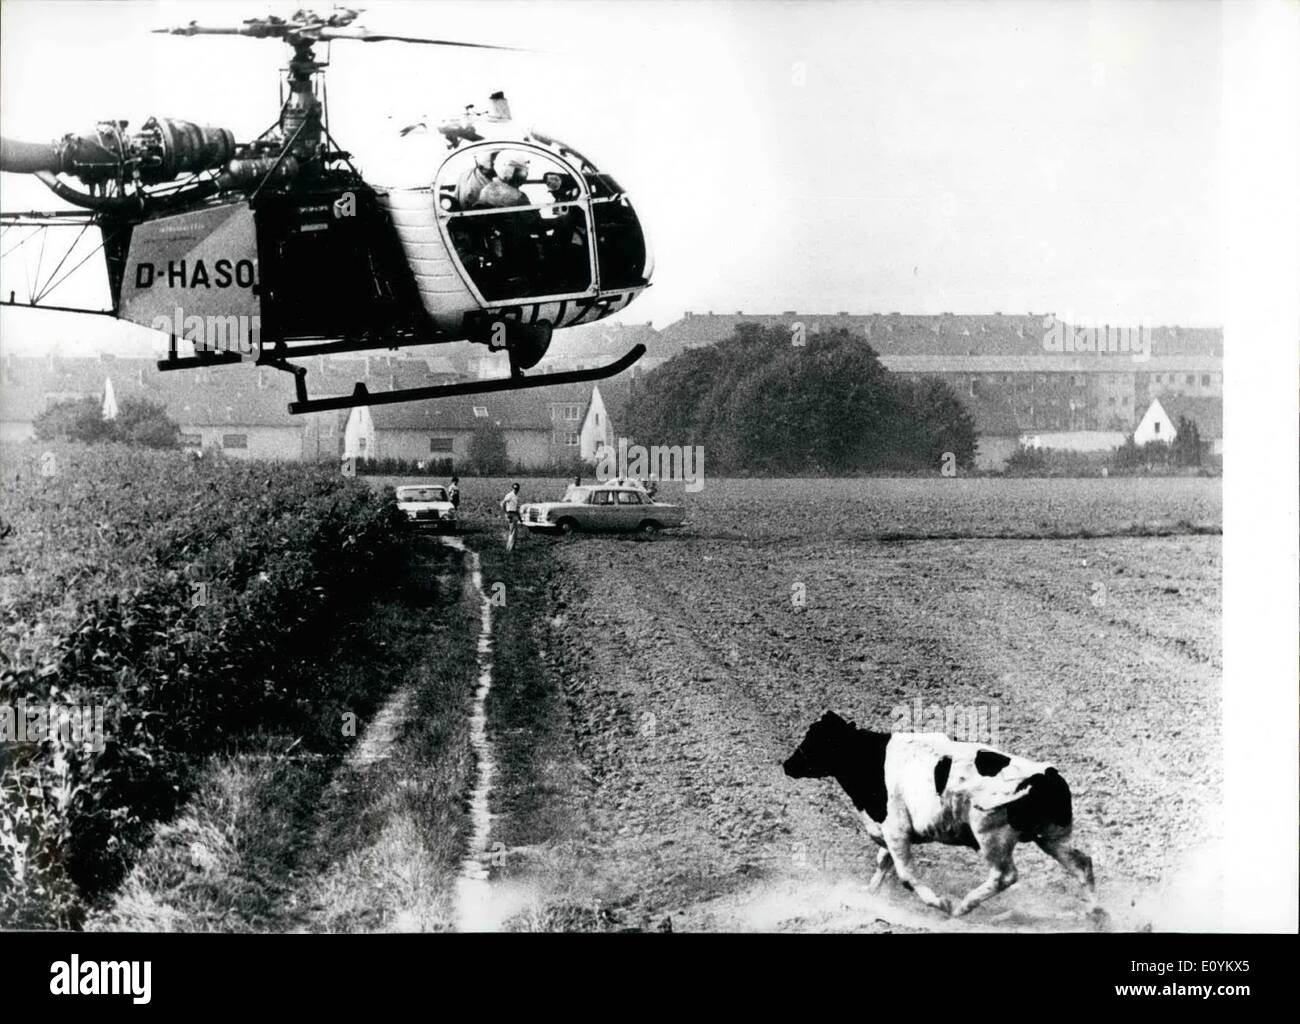 Septembre 09, 1970 - Wild Chase après un boeuf : a été faite par un hélicoptère de police à Cologne. Un boulon ox presque obstrué la route chargement de Cologne, W.Allemagne, à l'air-port de Cologne. Il a fallu deux policiers dans l'hélicoptère pour arrêter le boeuf en tirant 21 fois avec leurs pistolets. De nombreux spectateurs ont regardé ce nouveau type de ''Rodec' Banque D'Images